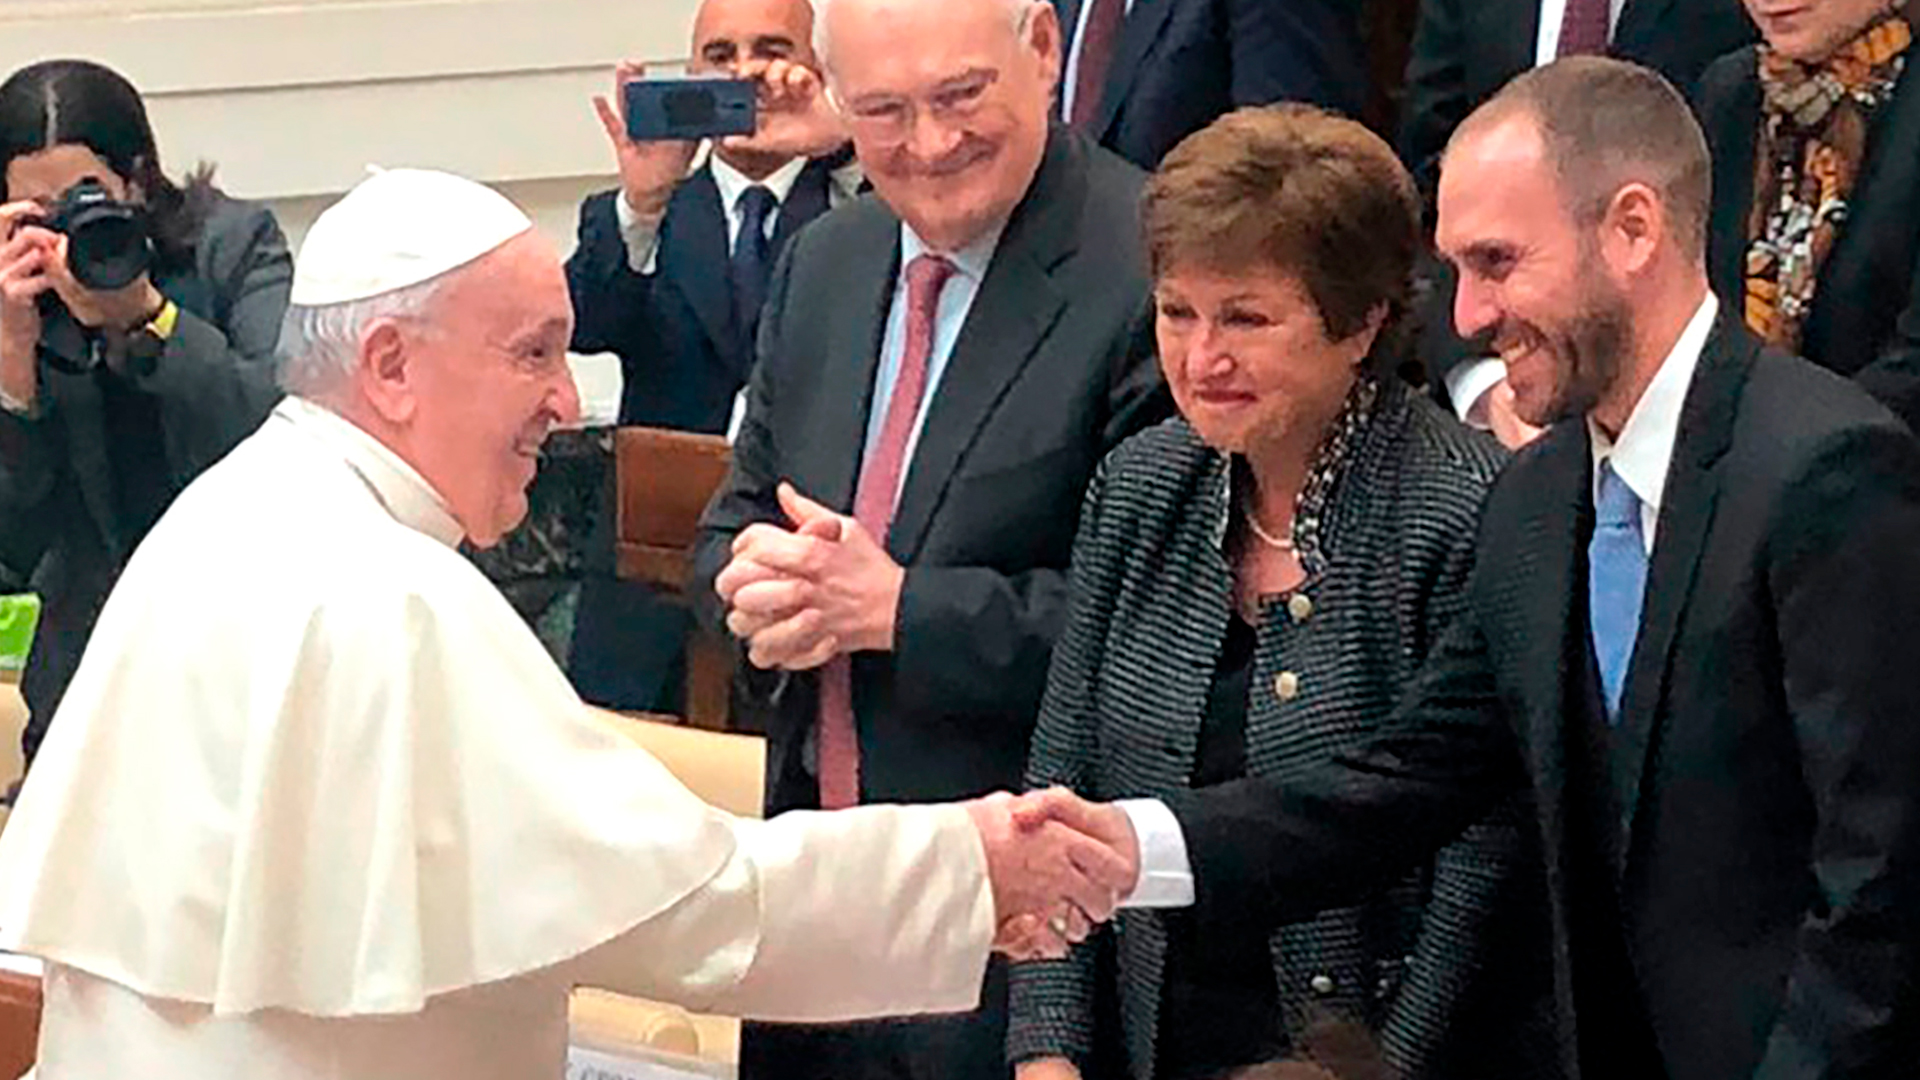 El papa Francisco, el ex ministro de Economía, Martín Guzmán, y entre ellos, la jefa del FMI, Kristalina Georgieva. (@Economia_Ar)